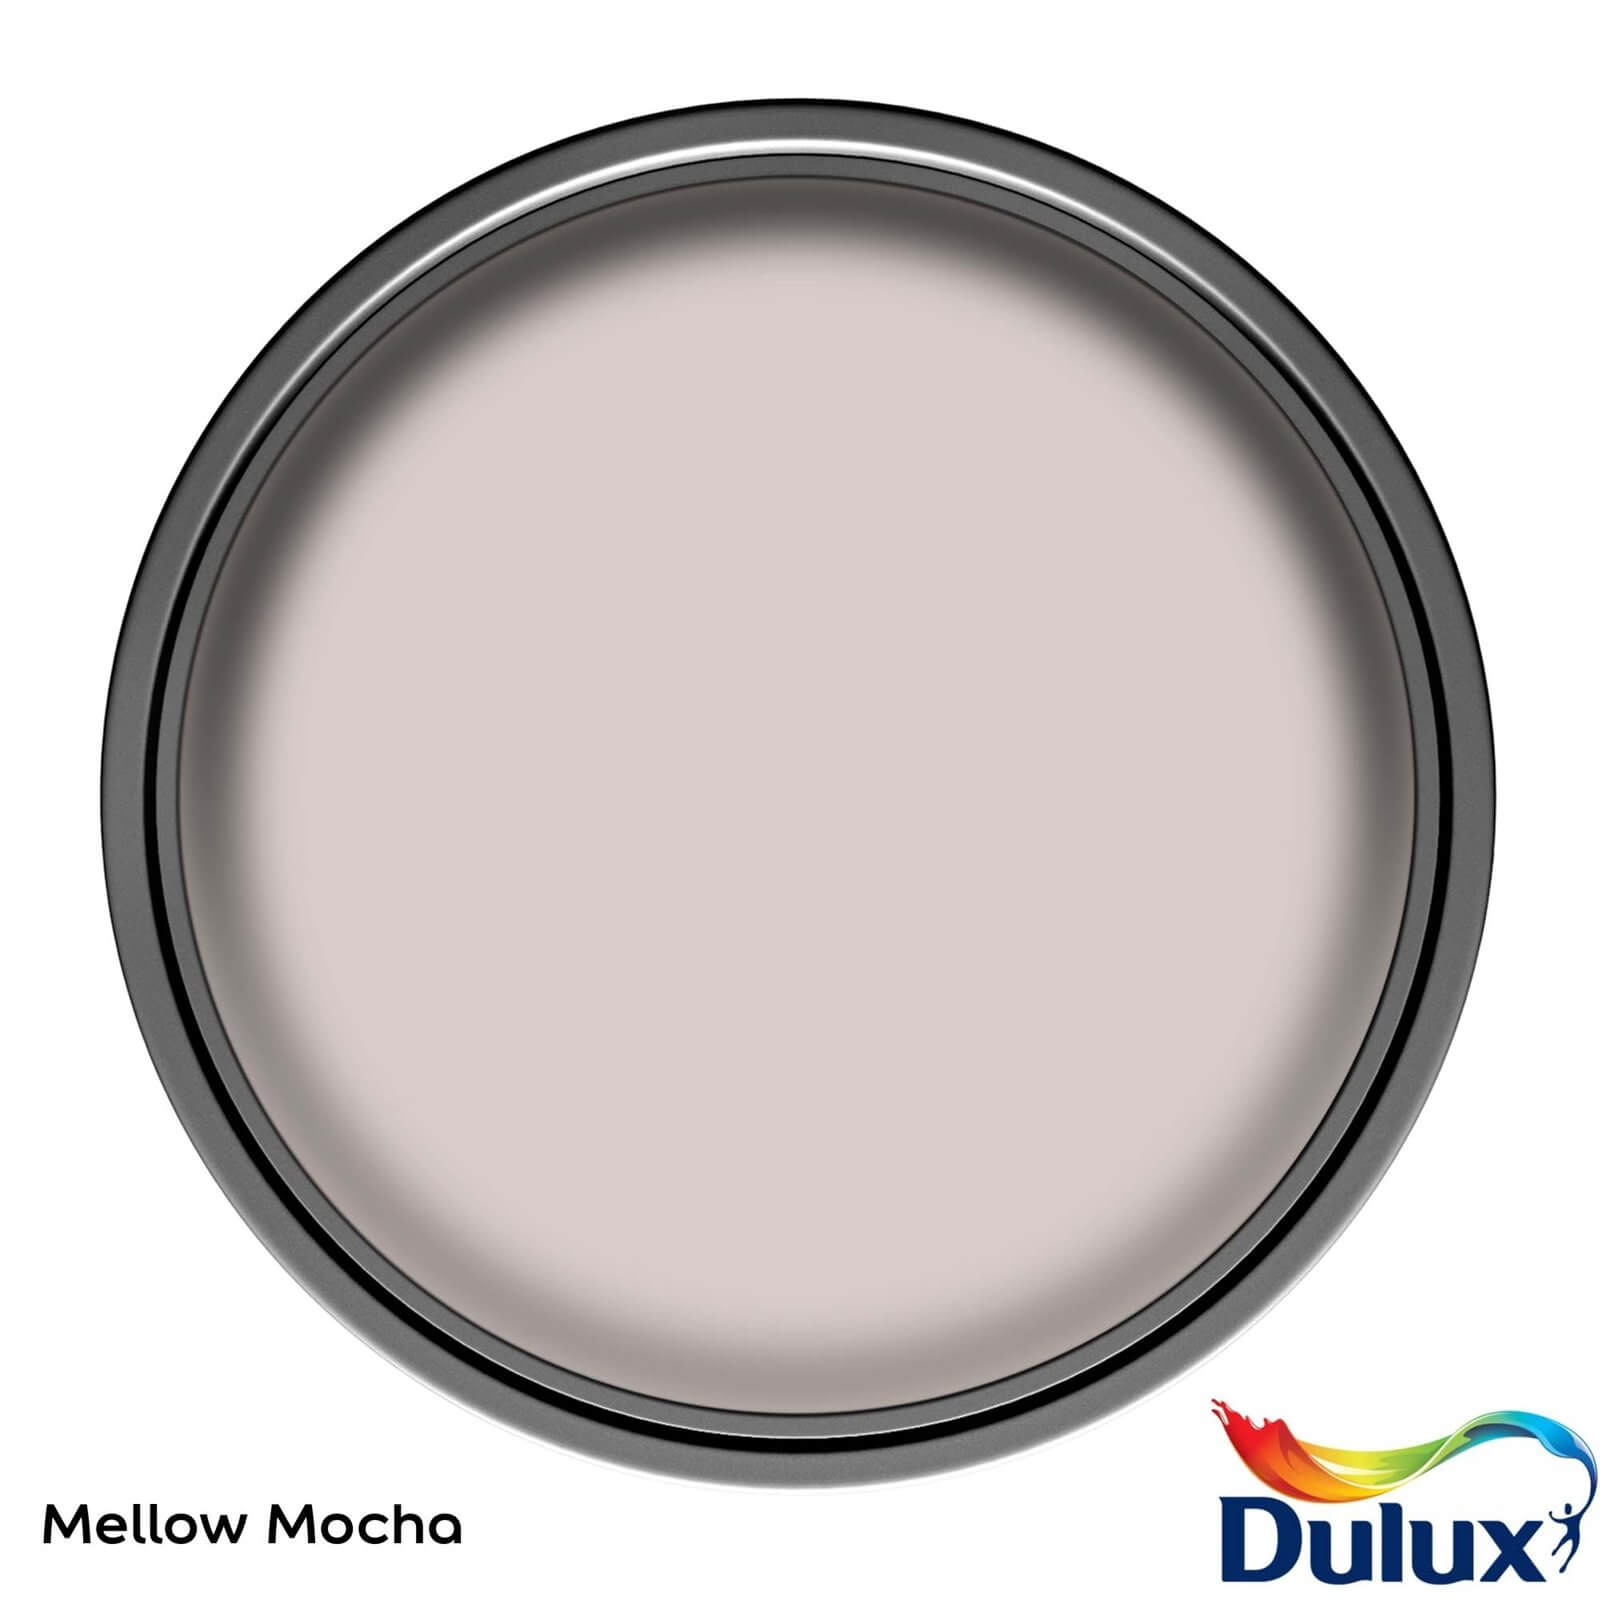 Dulux Easycare Kitchen Mellow Mocha - Matt Emulsion Paint - 2.5L